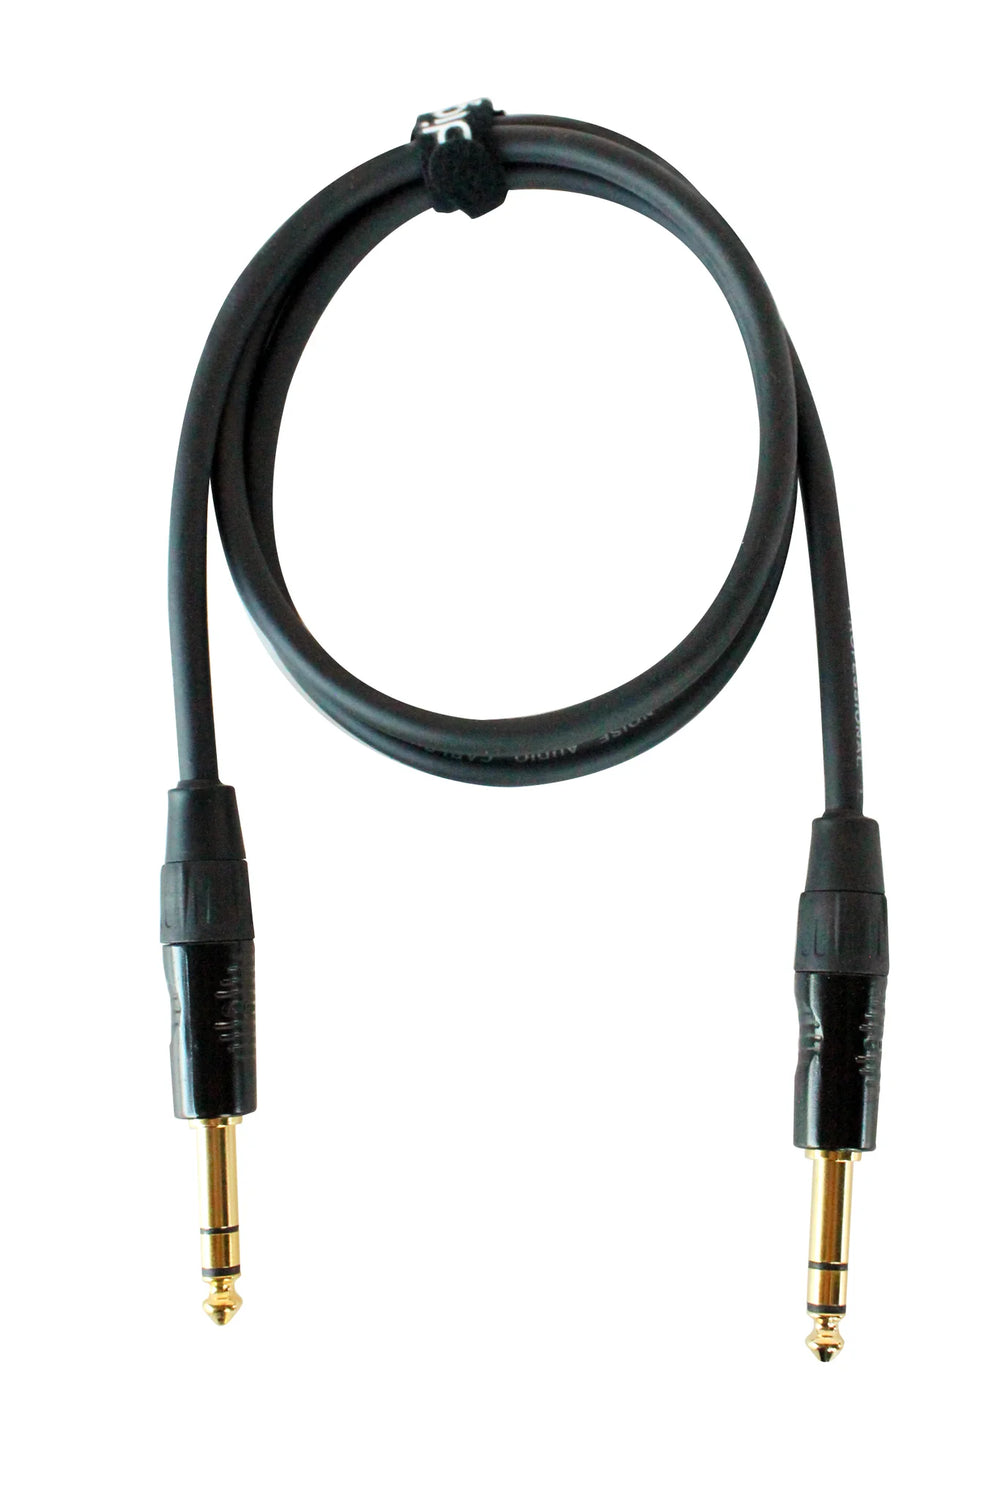 Adaptador de audio 2 jack RCA (hembra) a plug 1/4 mono (macho) - 30K6207  27-4195 - MaxiTec